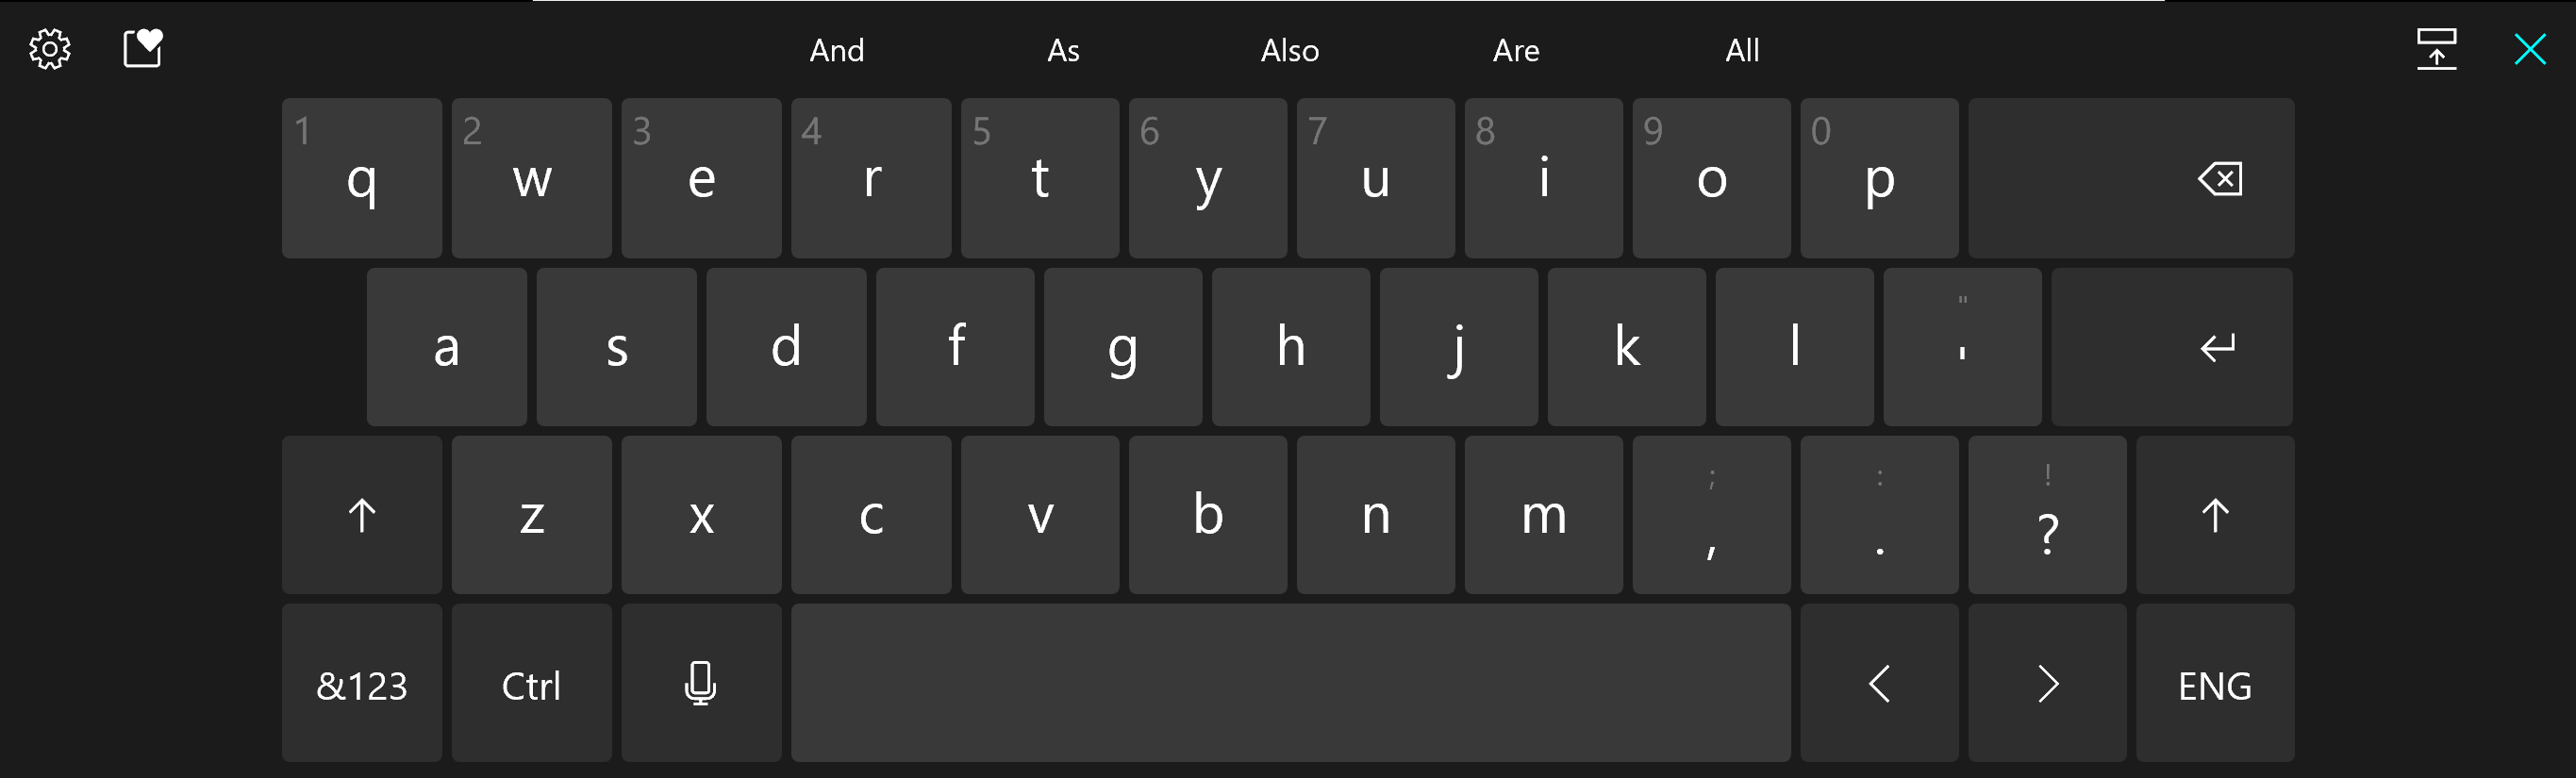 Sugerencias del teclado de la Build 21301 de Windows 10